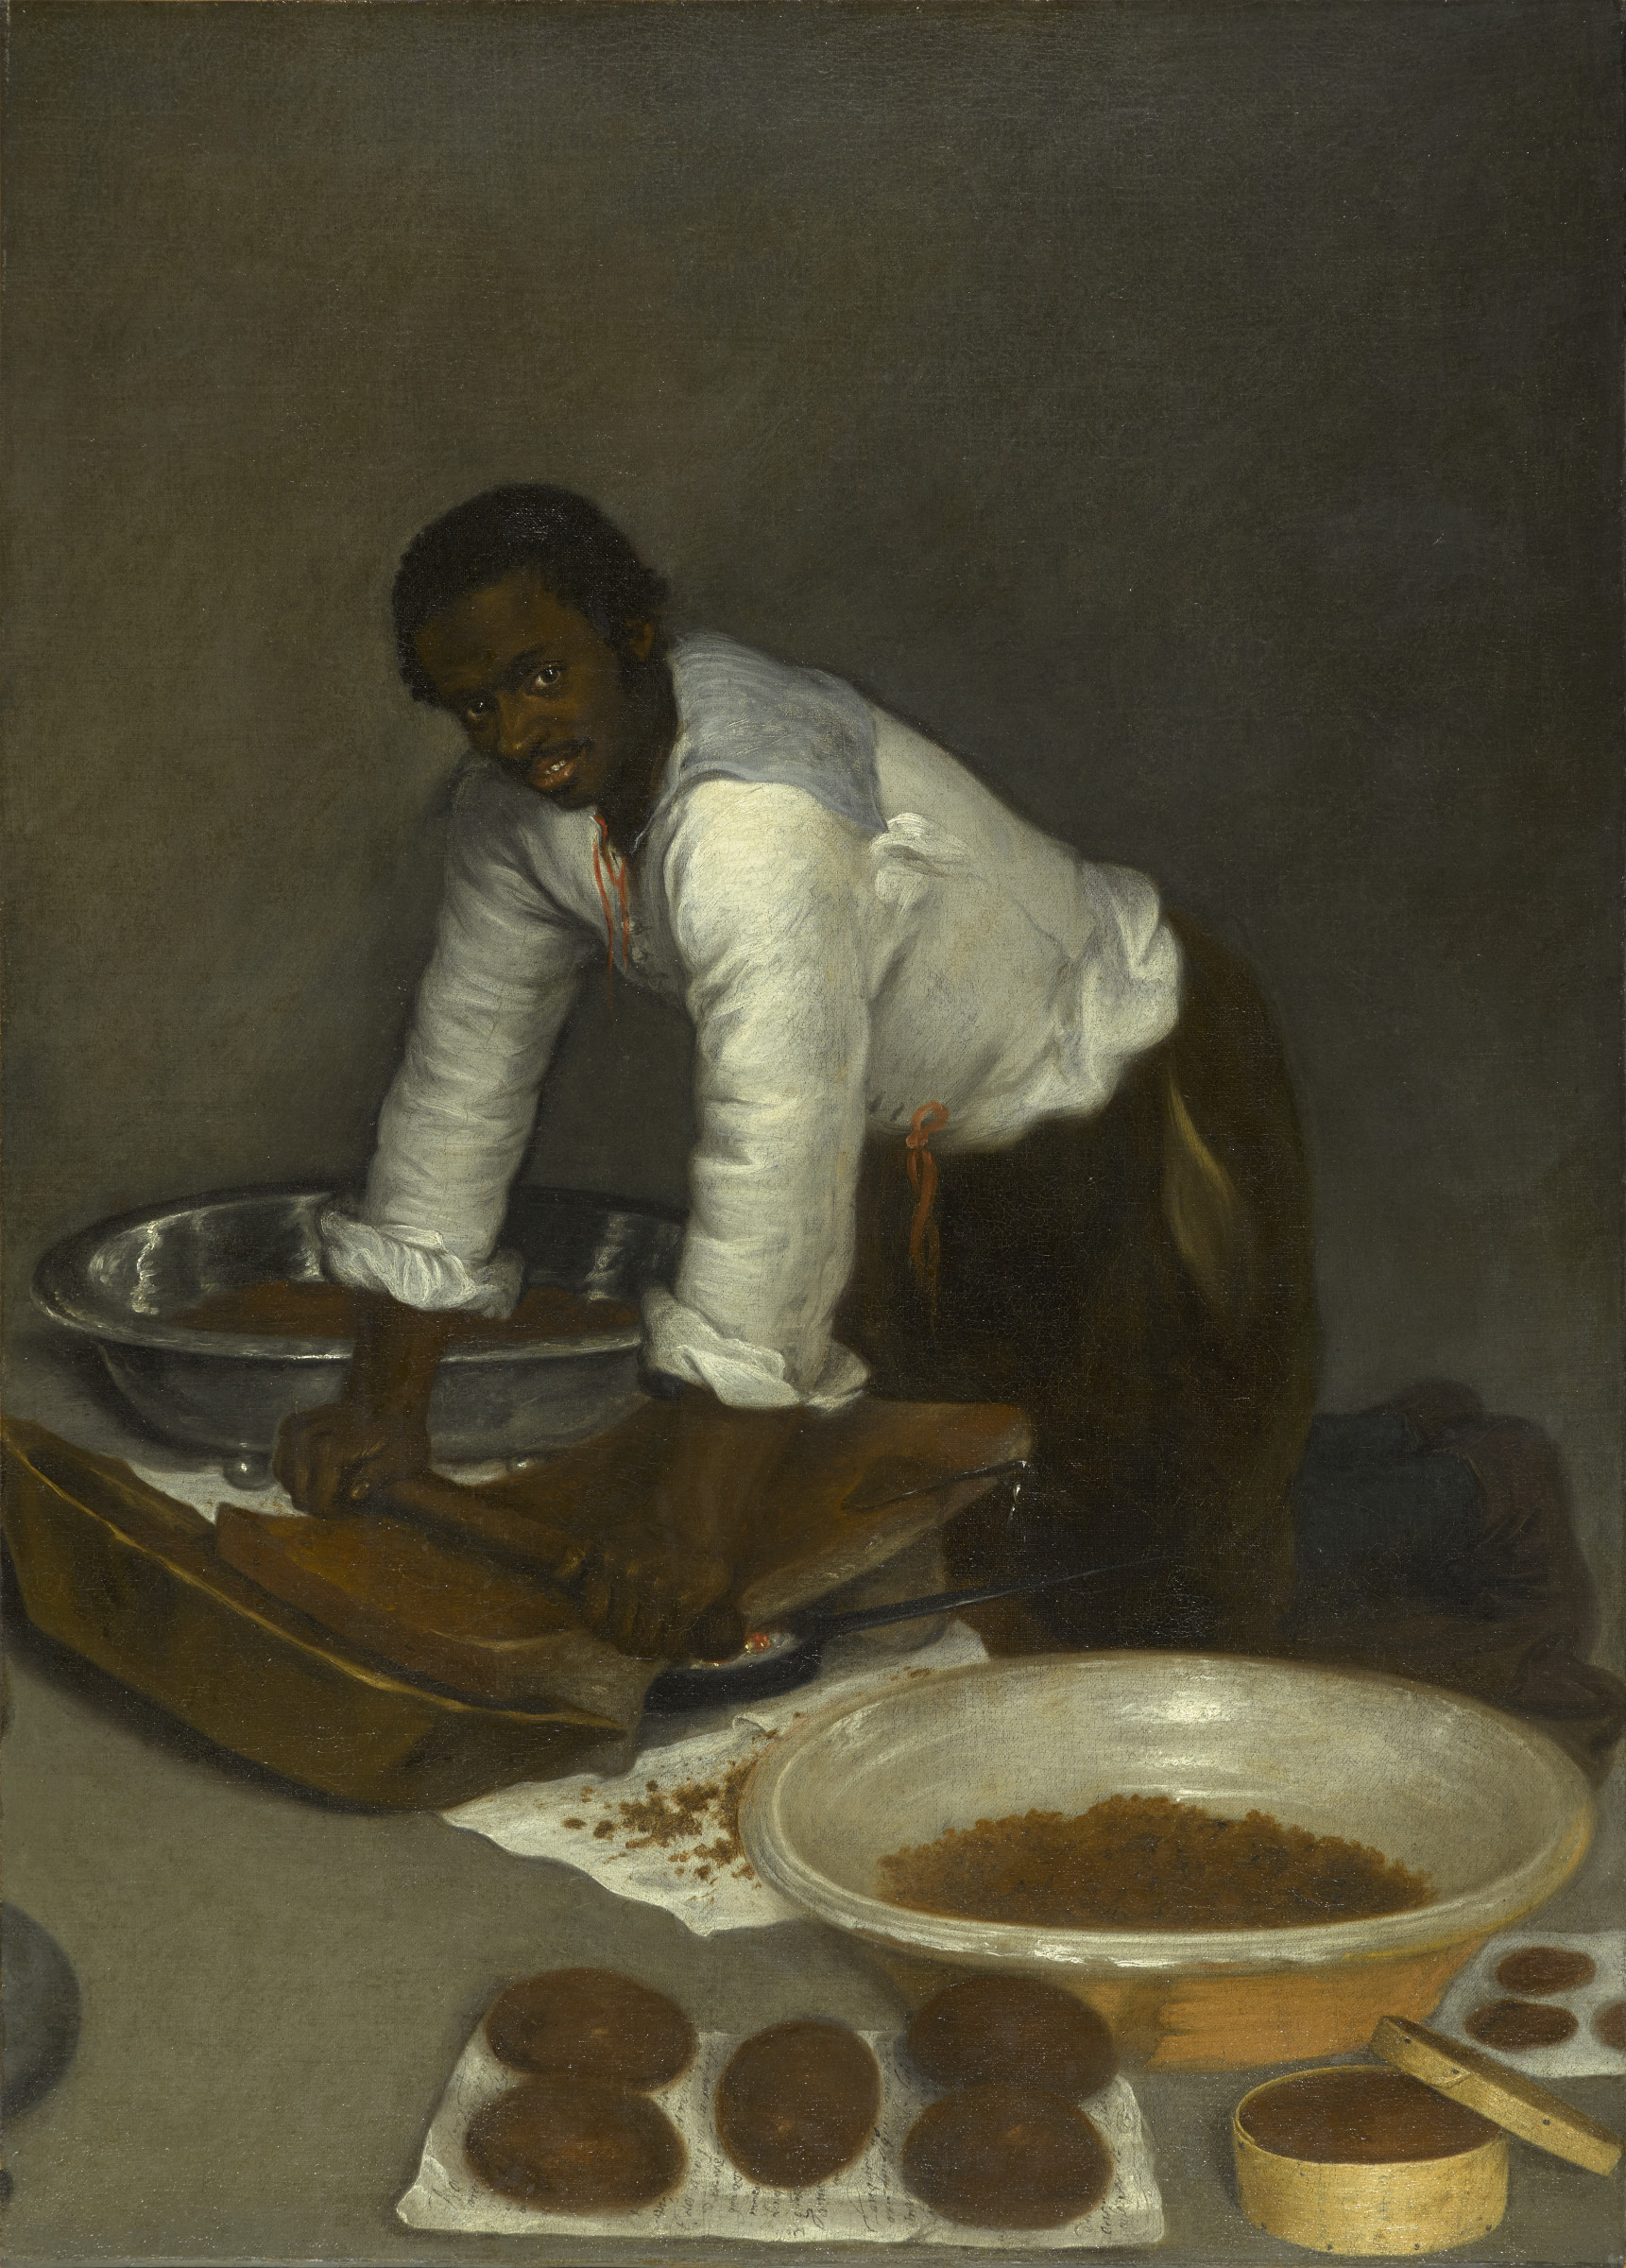 Мужчина, натирающий шоколад (A Man Scraping Chocolate) by Неизвестный Художни - ок. 1680-1780 - 104.1 x 71.1 см 